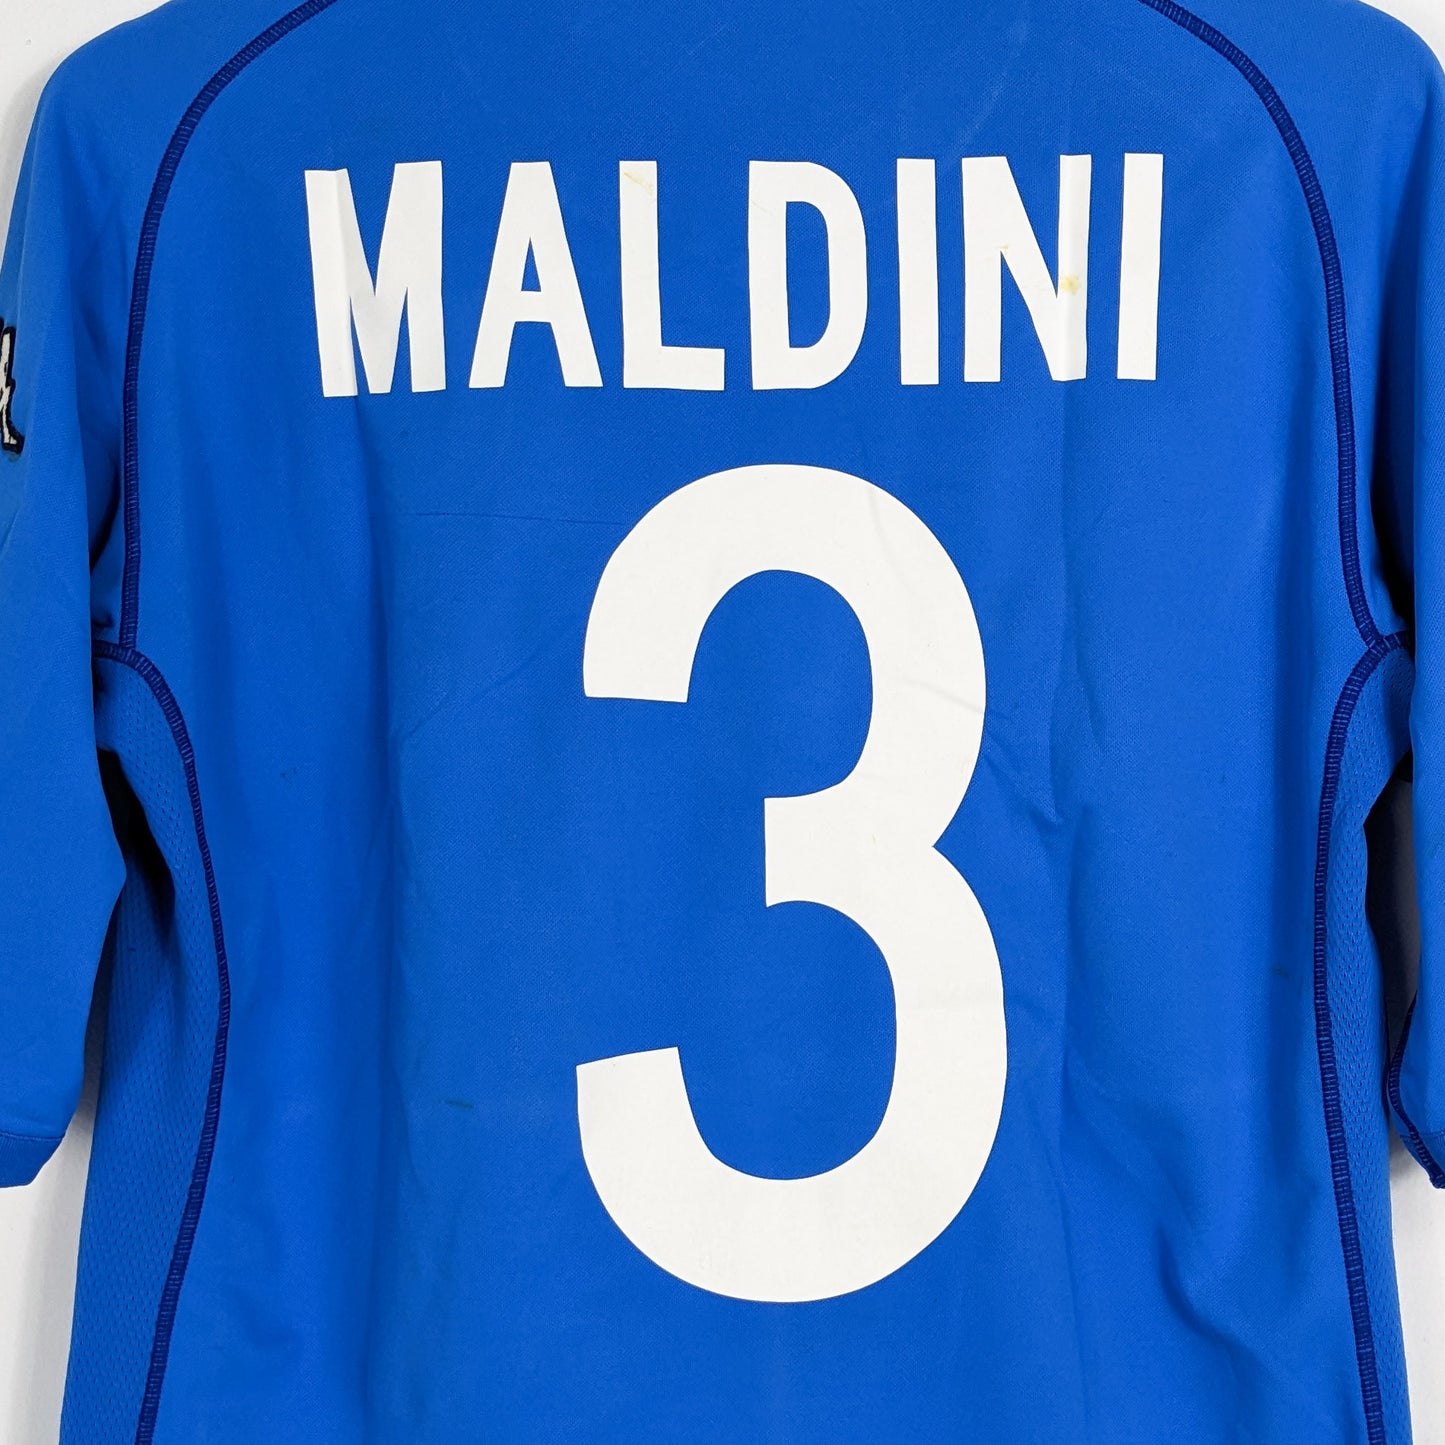 Authentic Italy 2002 Home - Maldini #3 Size M